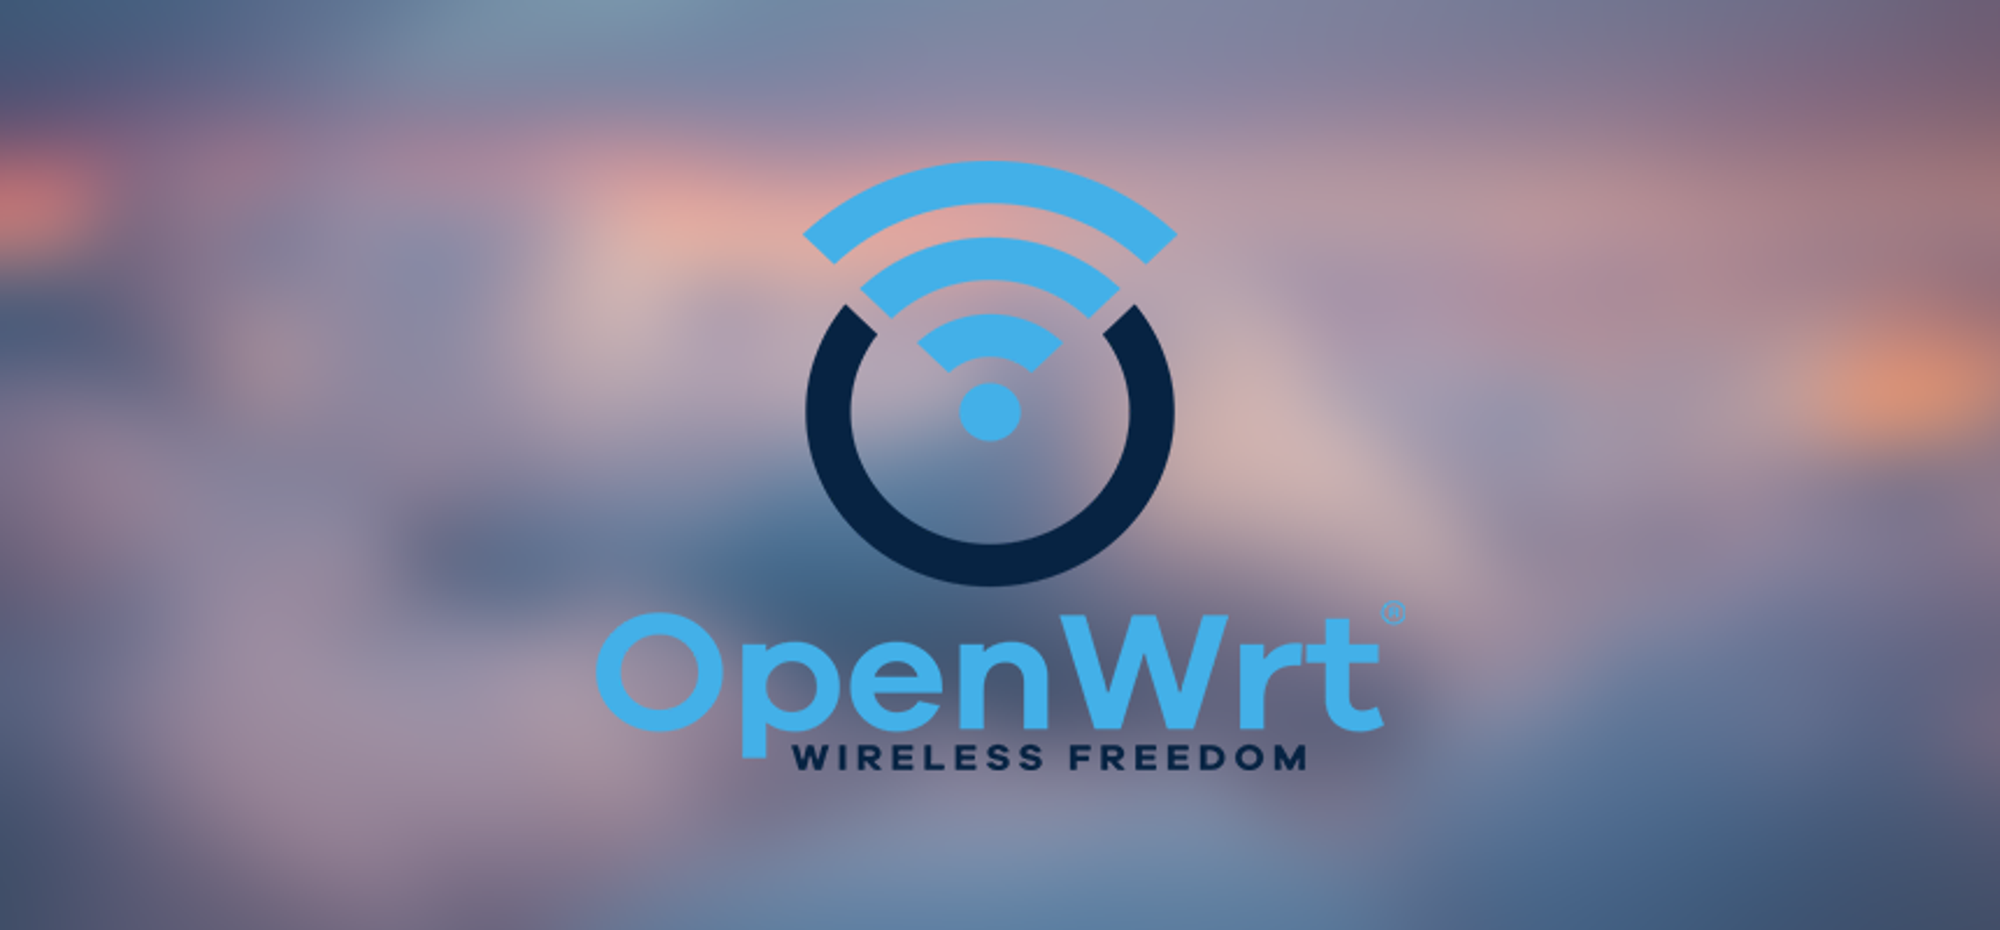 OpenWrt 固件自编译教程：从入门到酸爽！ - 喵斯基部落